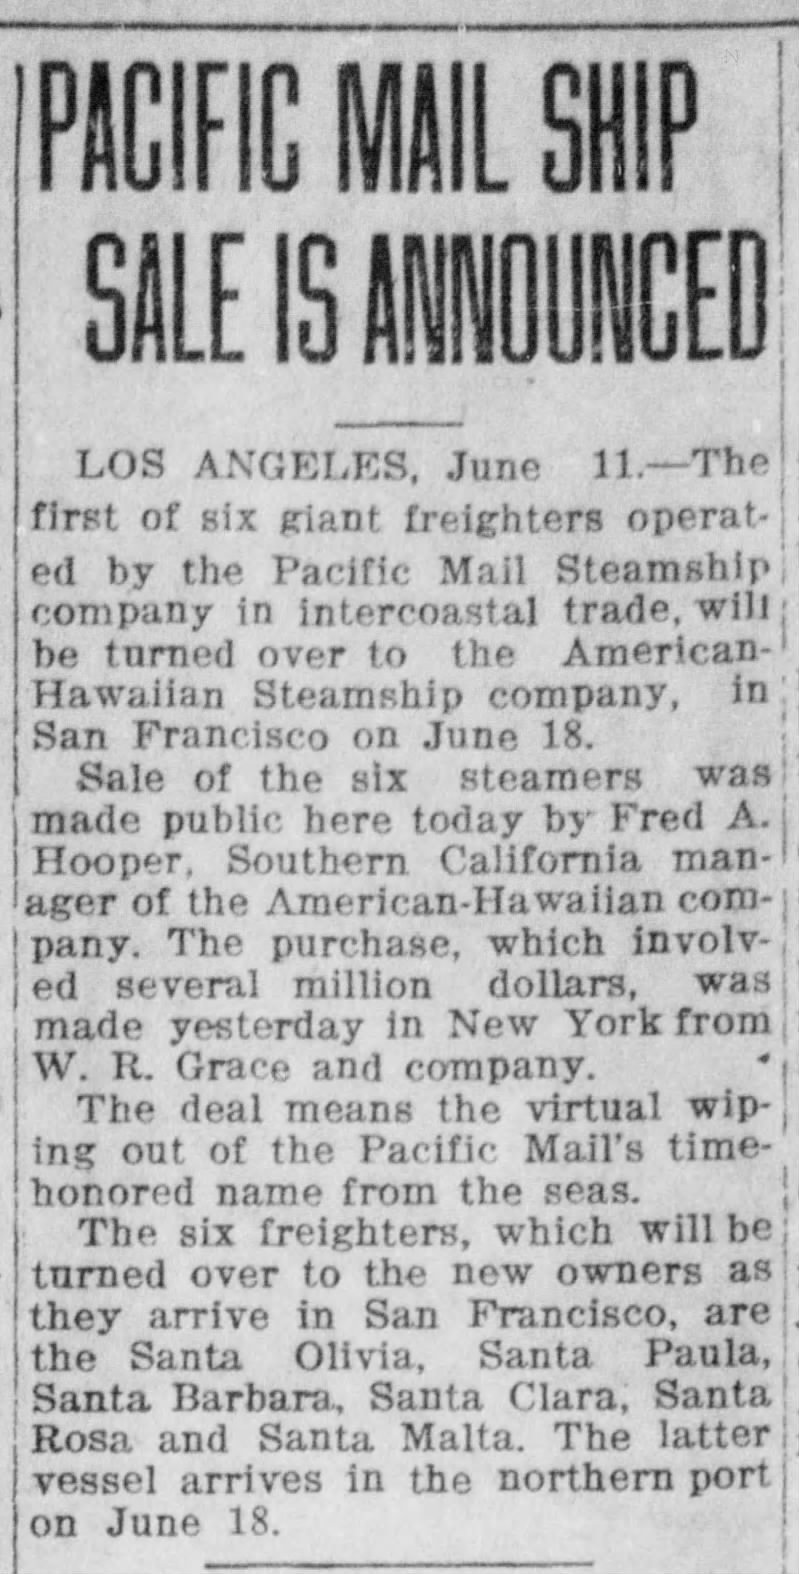 Sale of Santa Olivia and other PMSS ships to Hawaiian-American Jun 1925